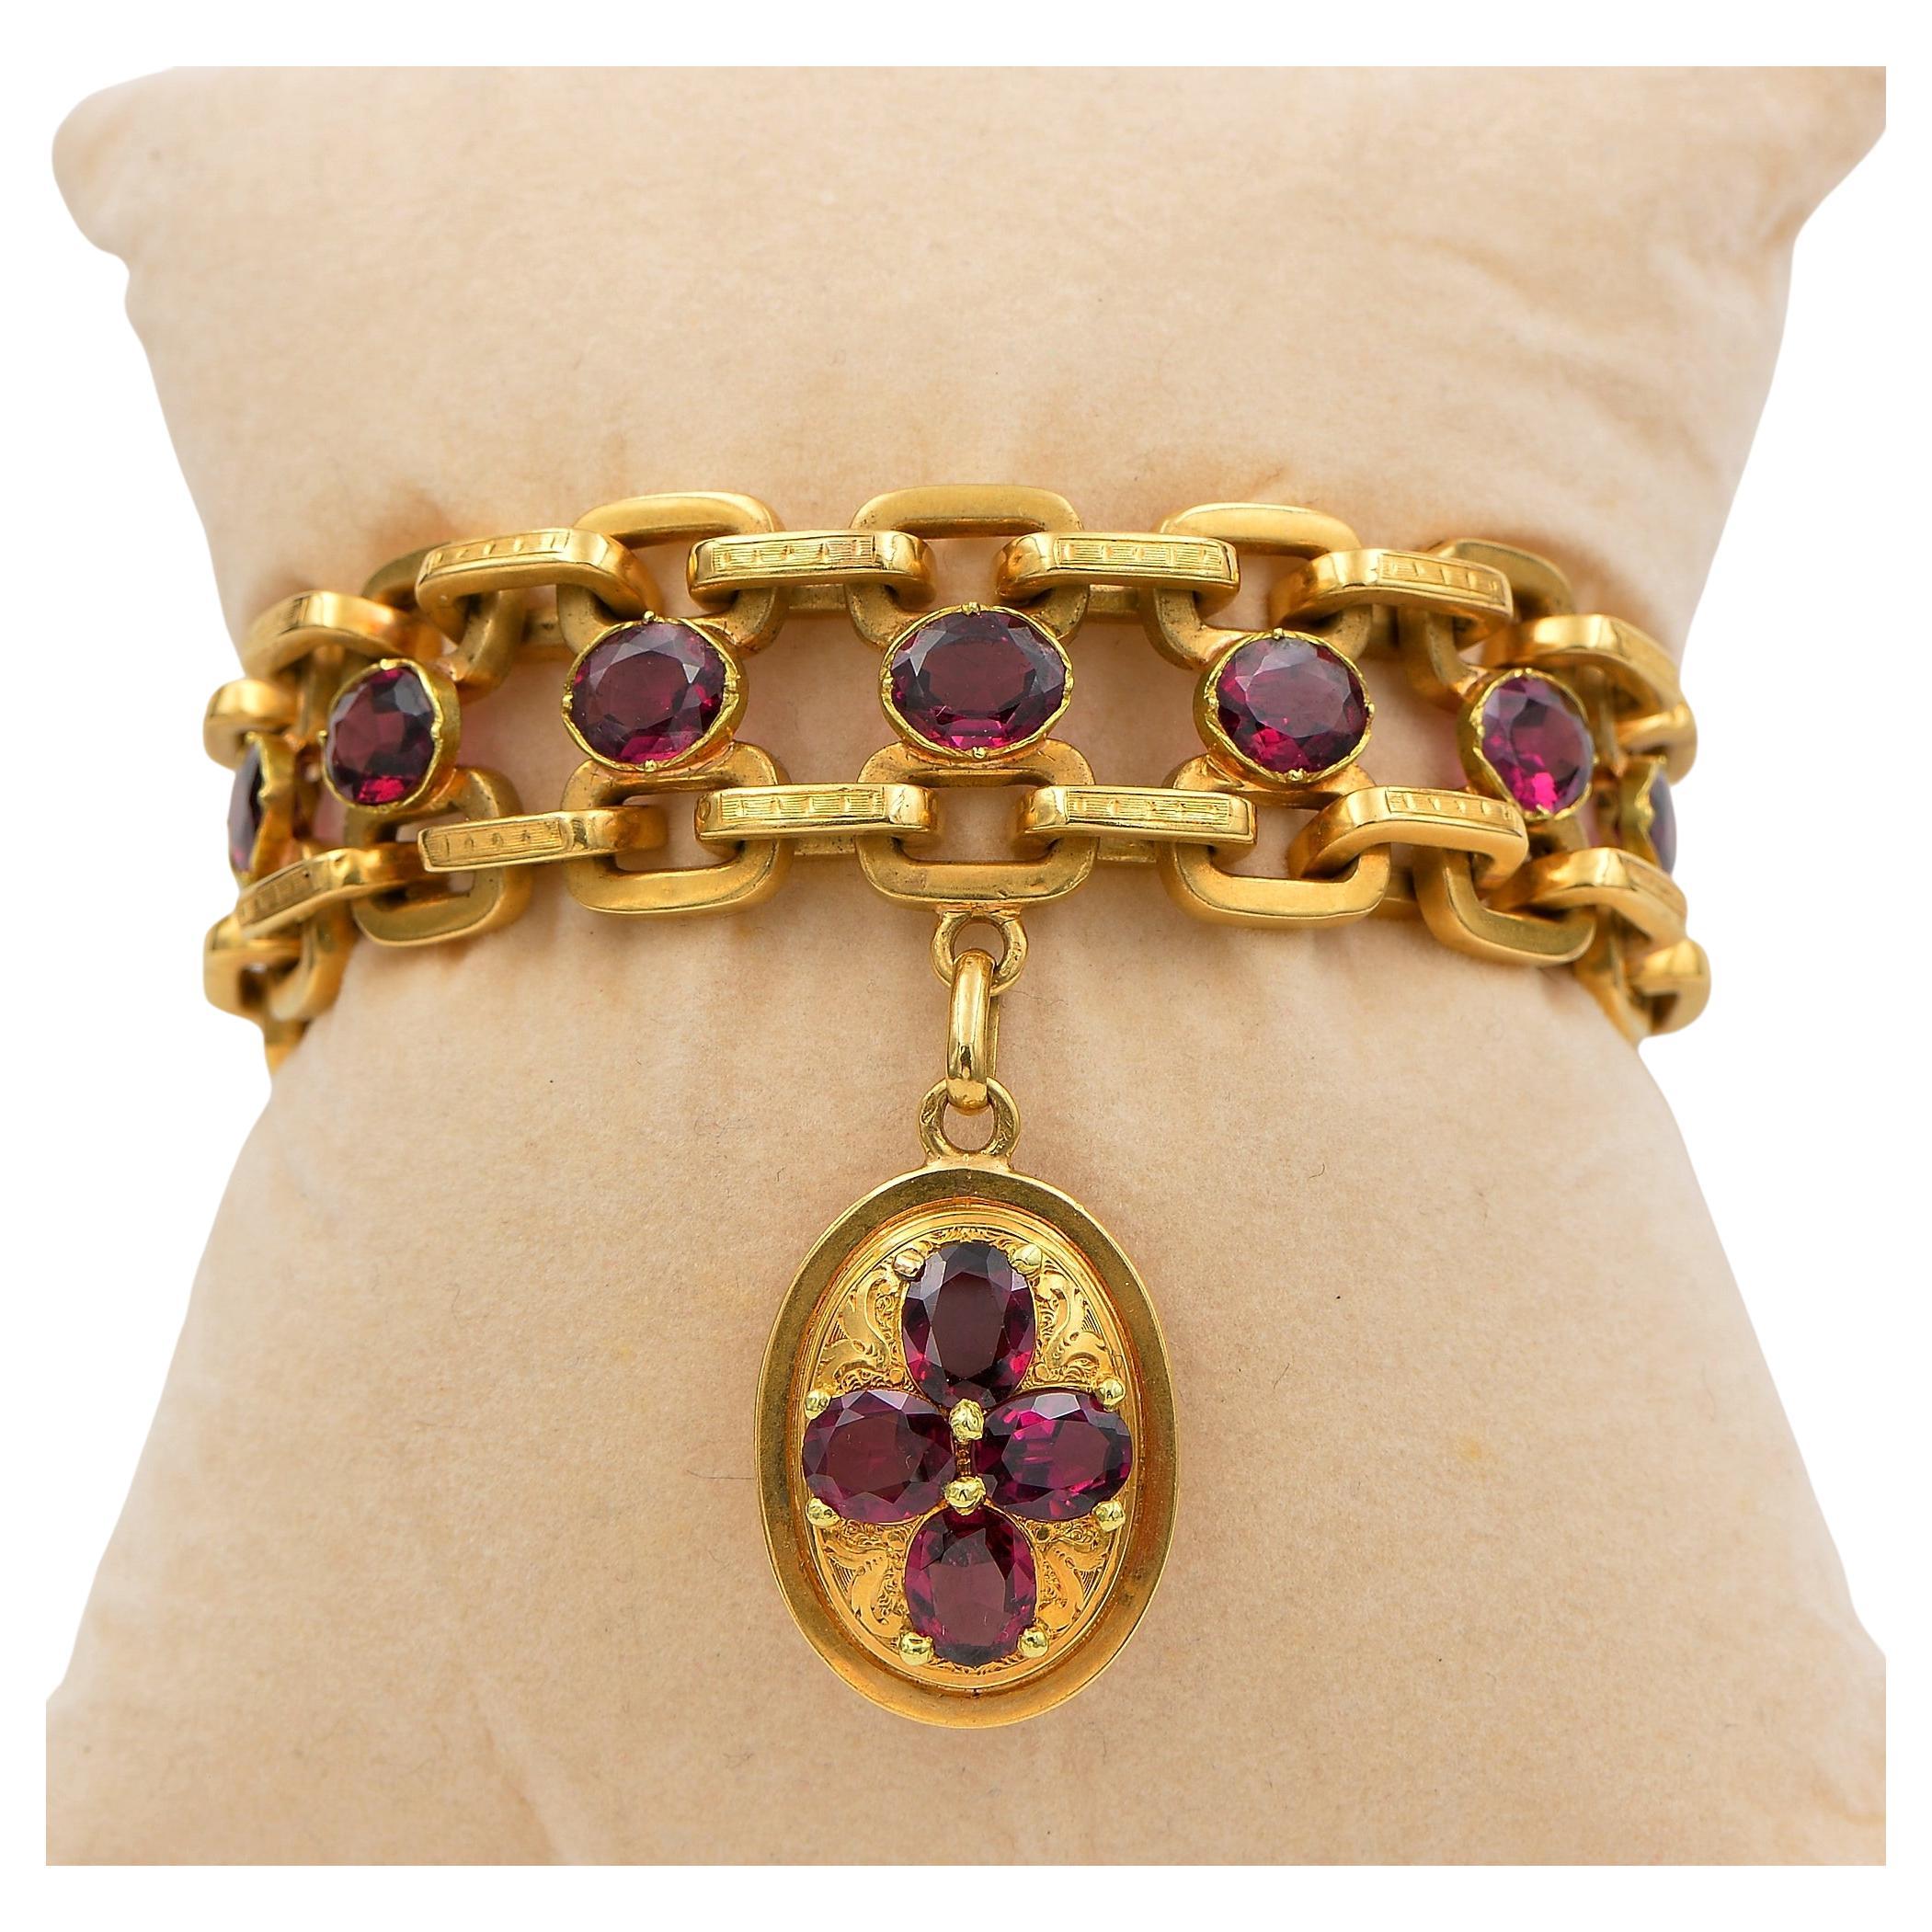 1840s Charm Bracelets